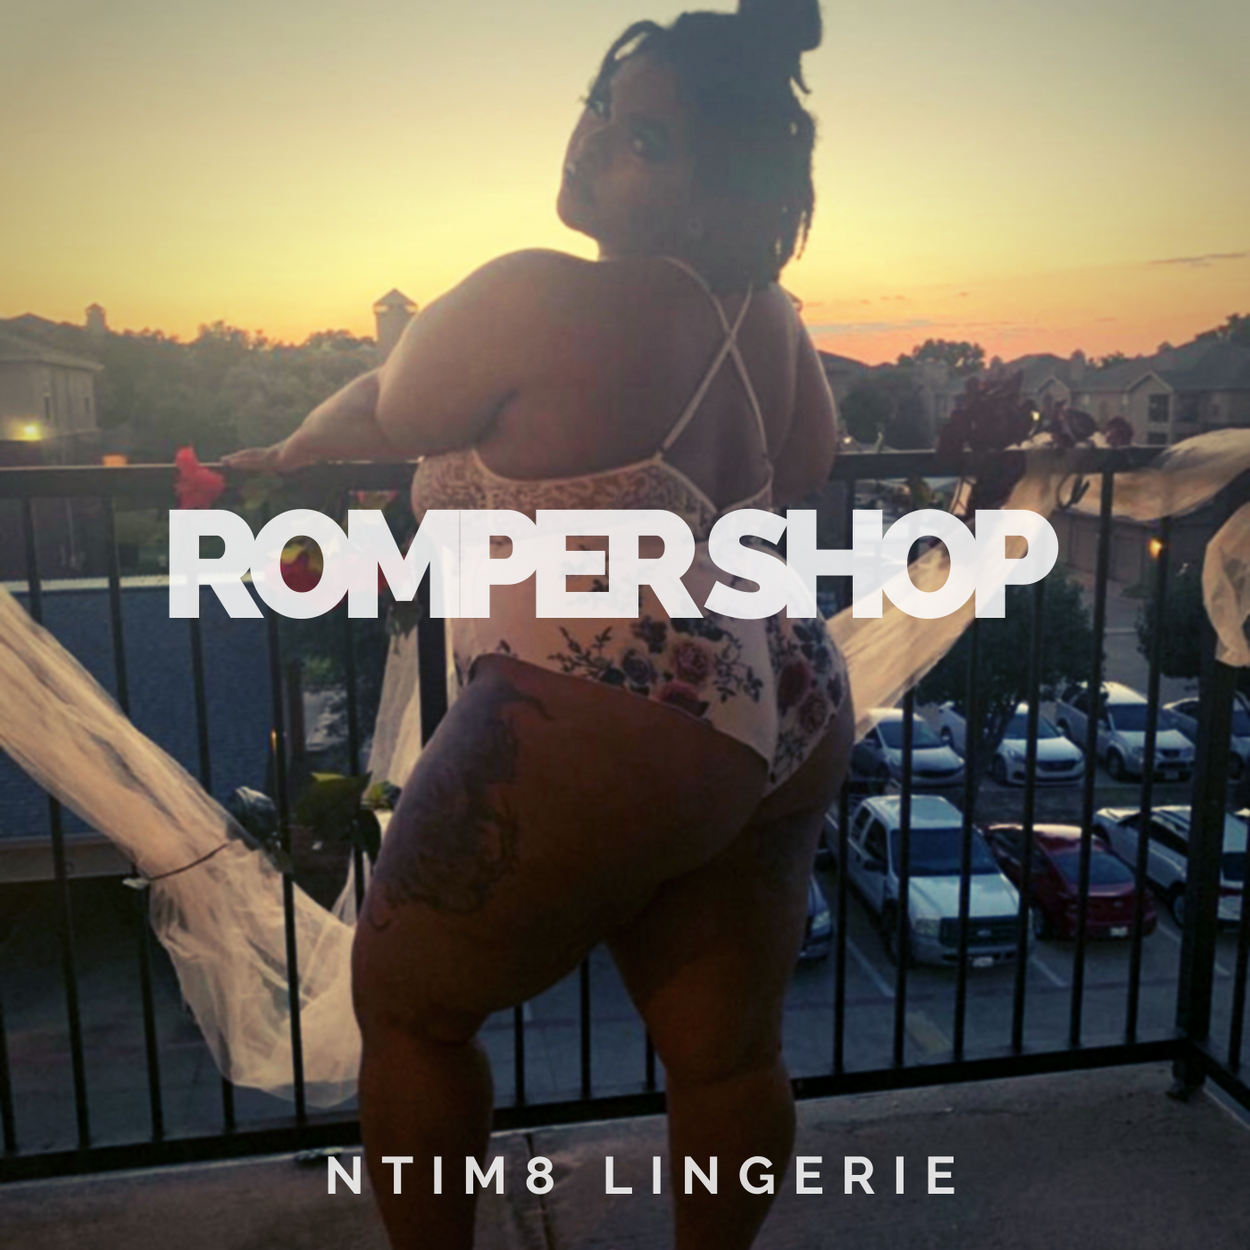 Romper Shop